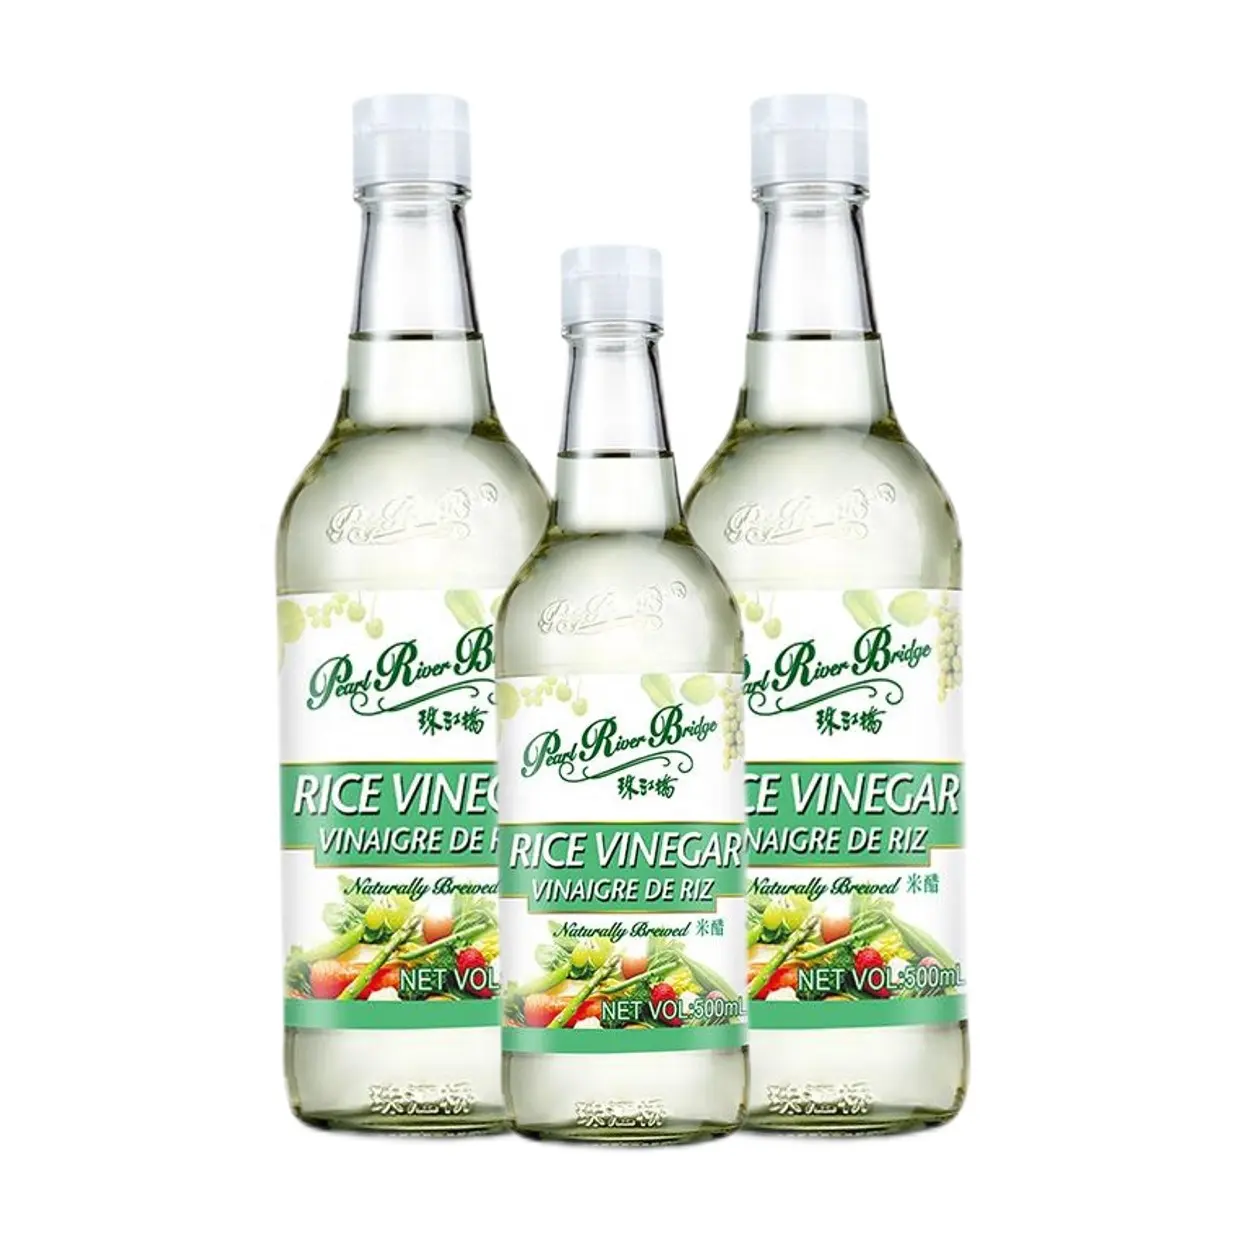 Wholesale Chinese Apple Cider White Vinegar 500ML Bottles Rice Vinegar of PRB Brand